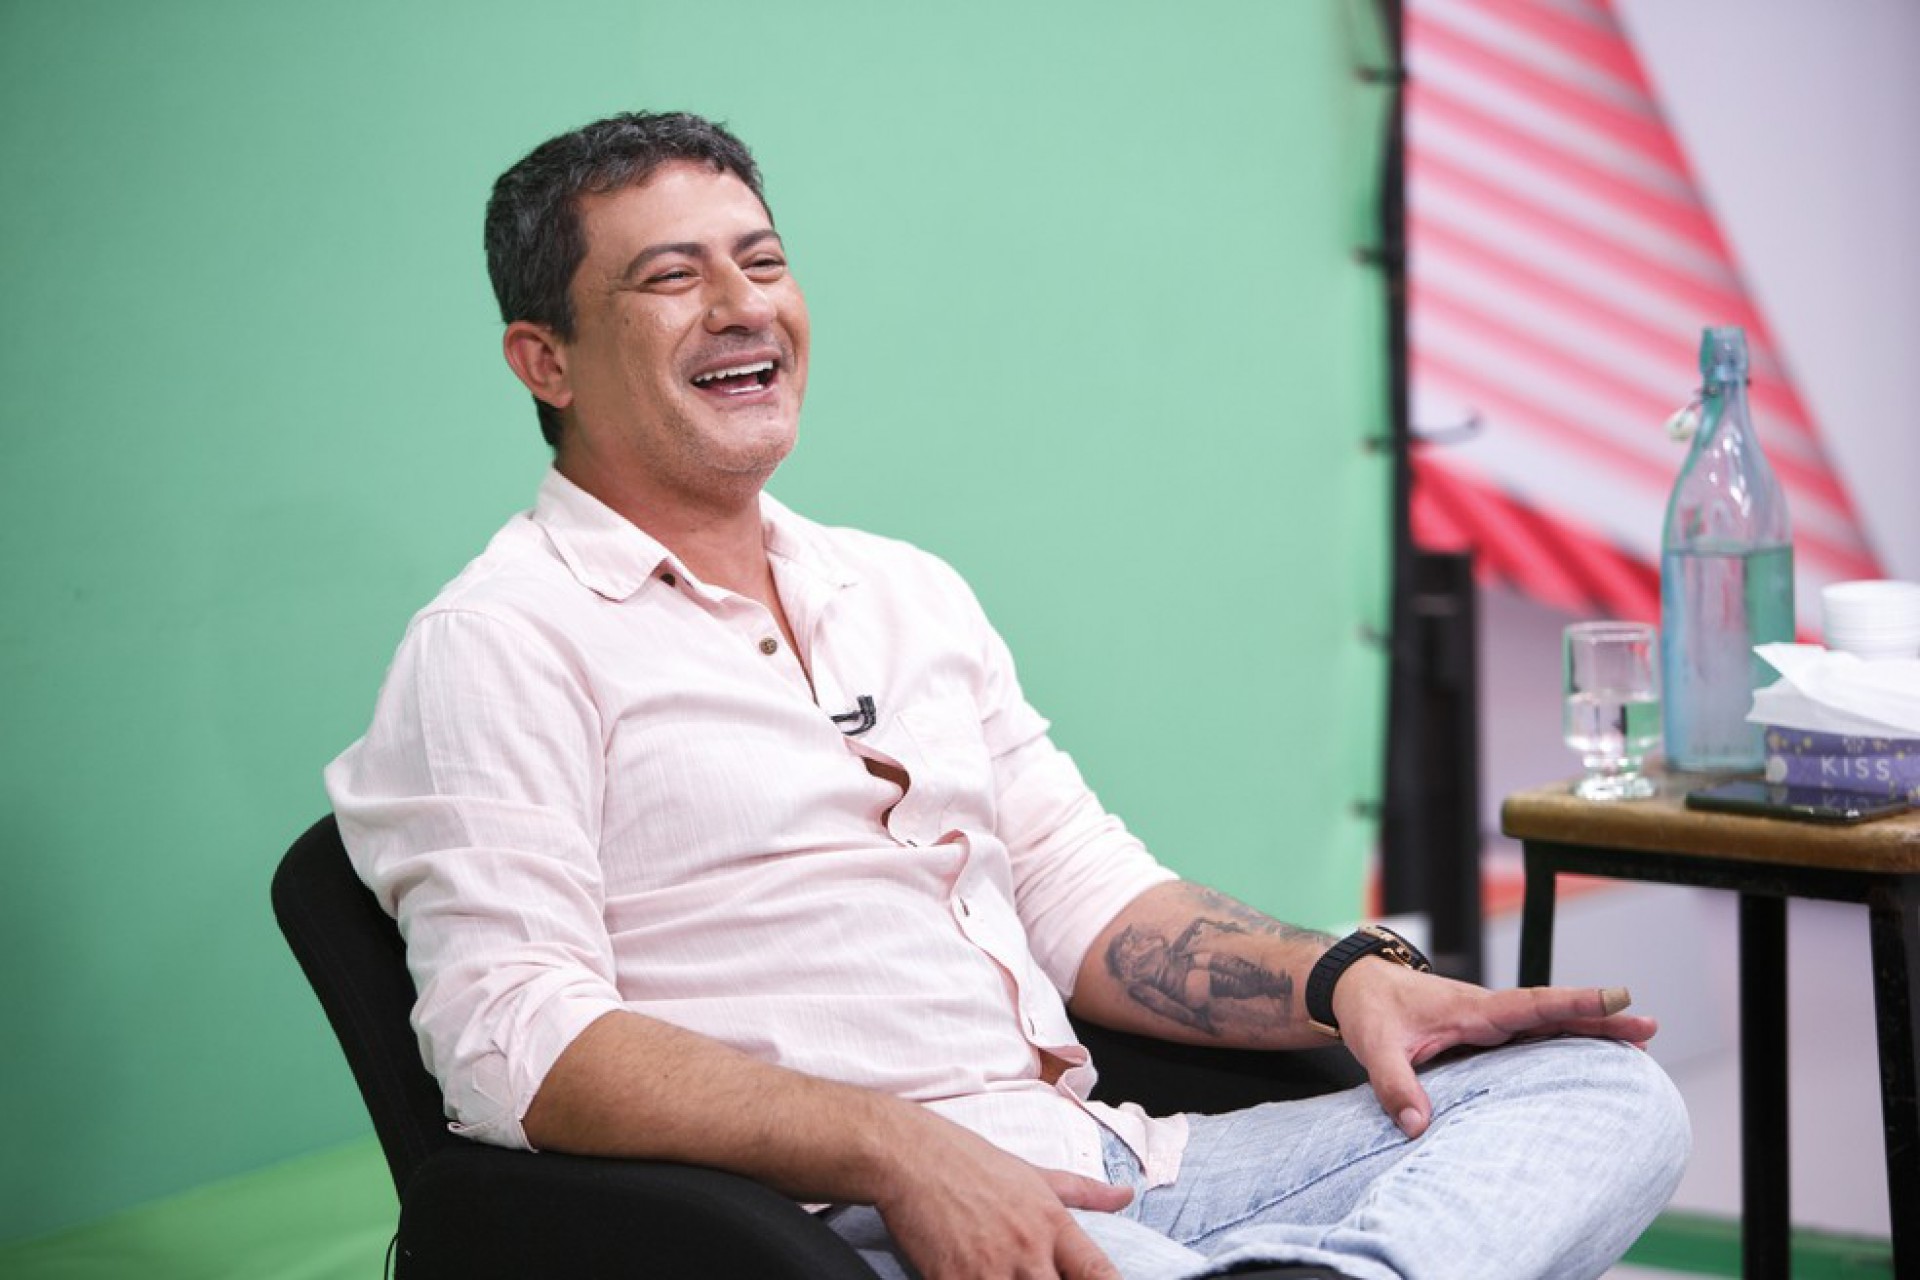 Tom interpretou o Louro José por mais de 20 anos - Fabrício Mota/TV Globo